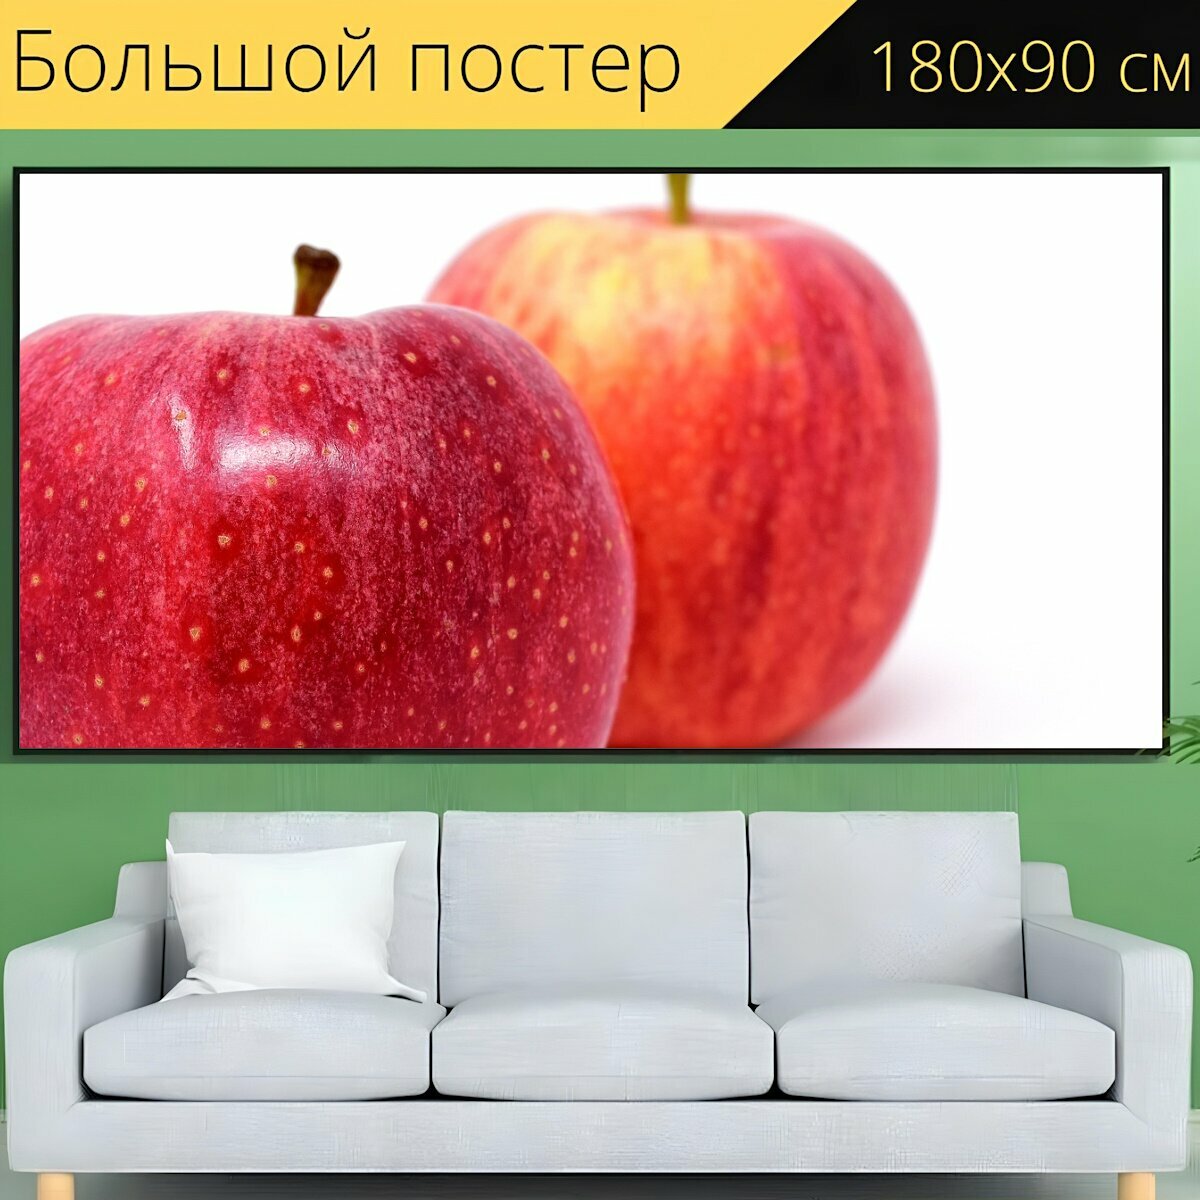 Большой постер "Яблоко, фрукты, красное яблоко" 180 x 90 см. для интерьера